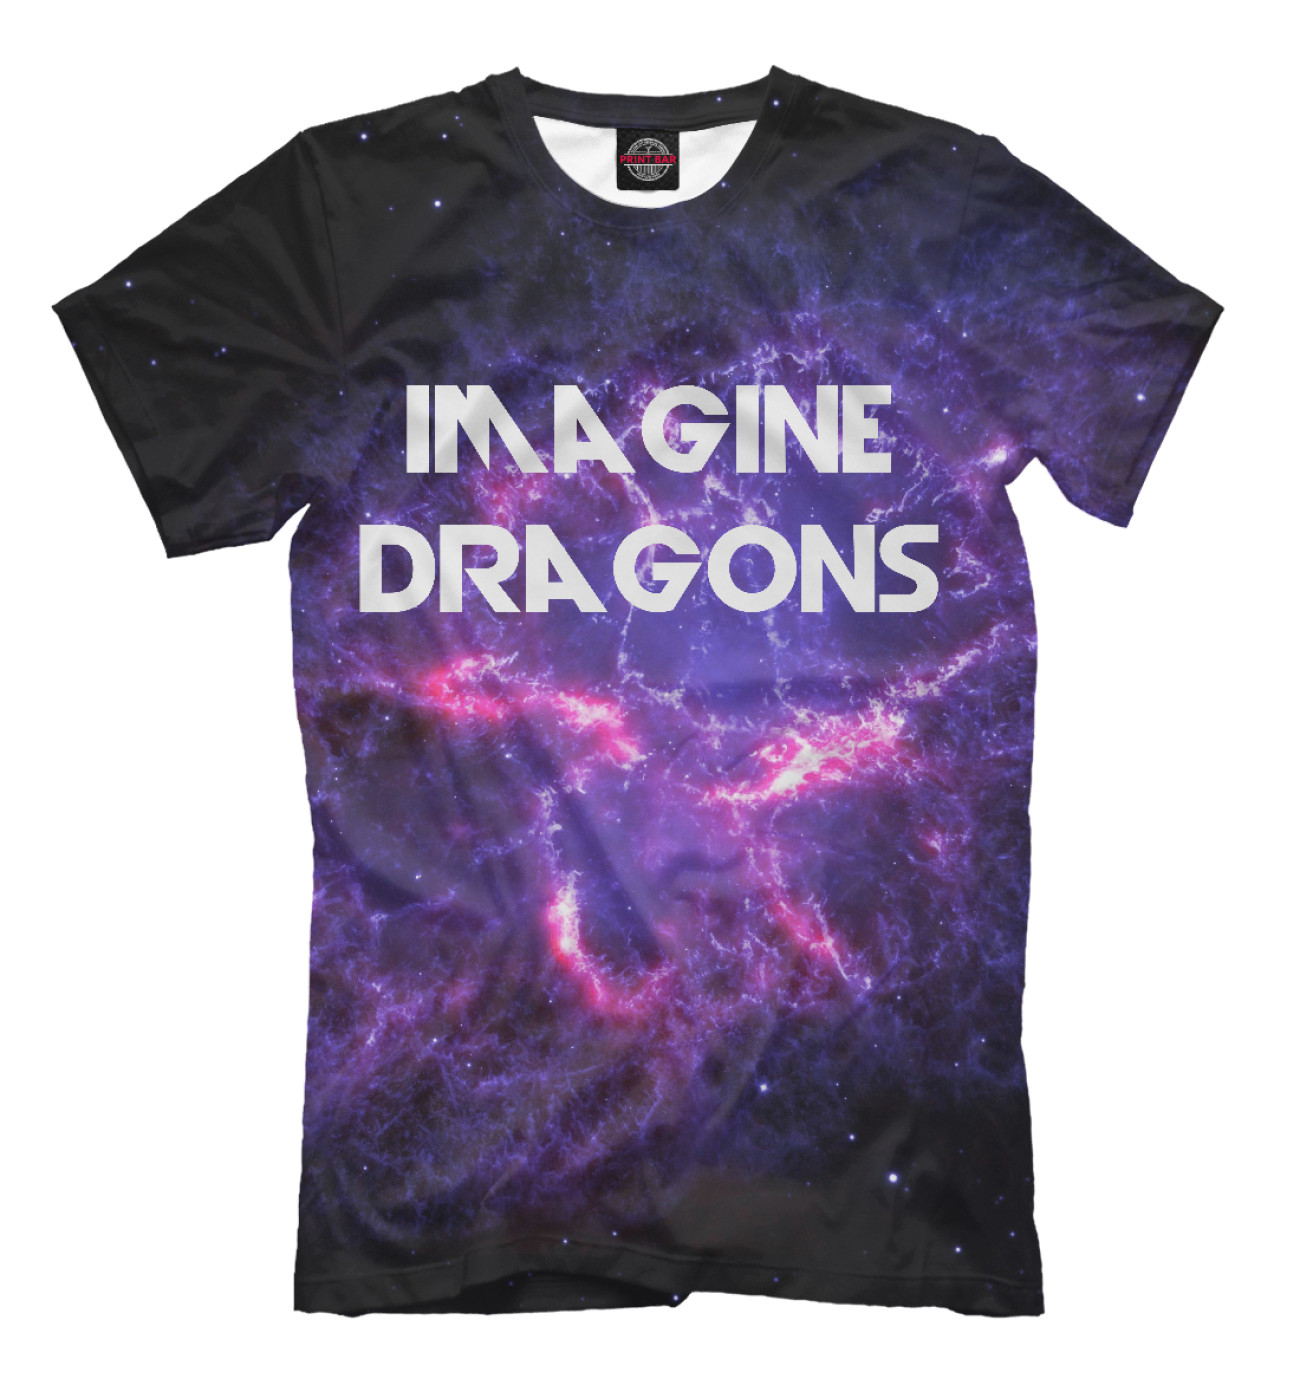 Мужская Футболка Imagine Dragons in Stars, артикул: IMA-413813-fut-2